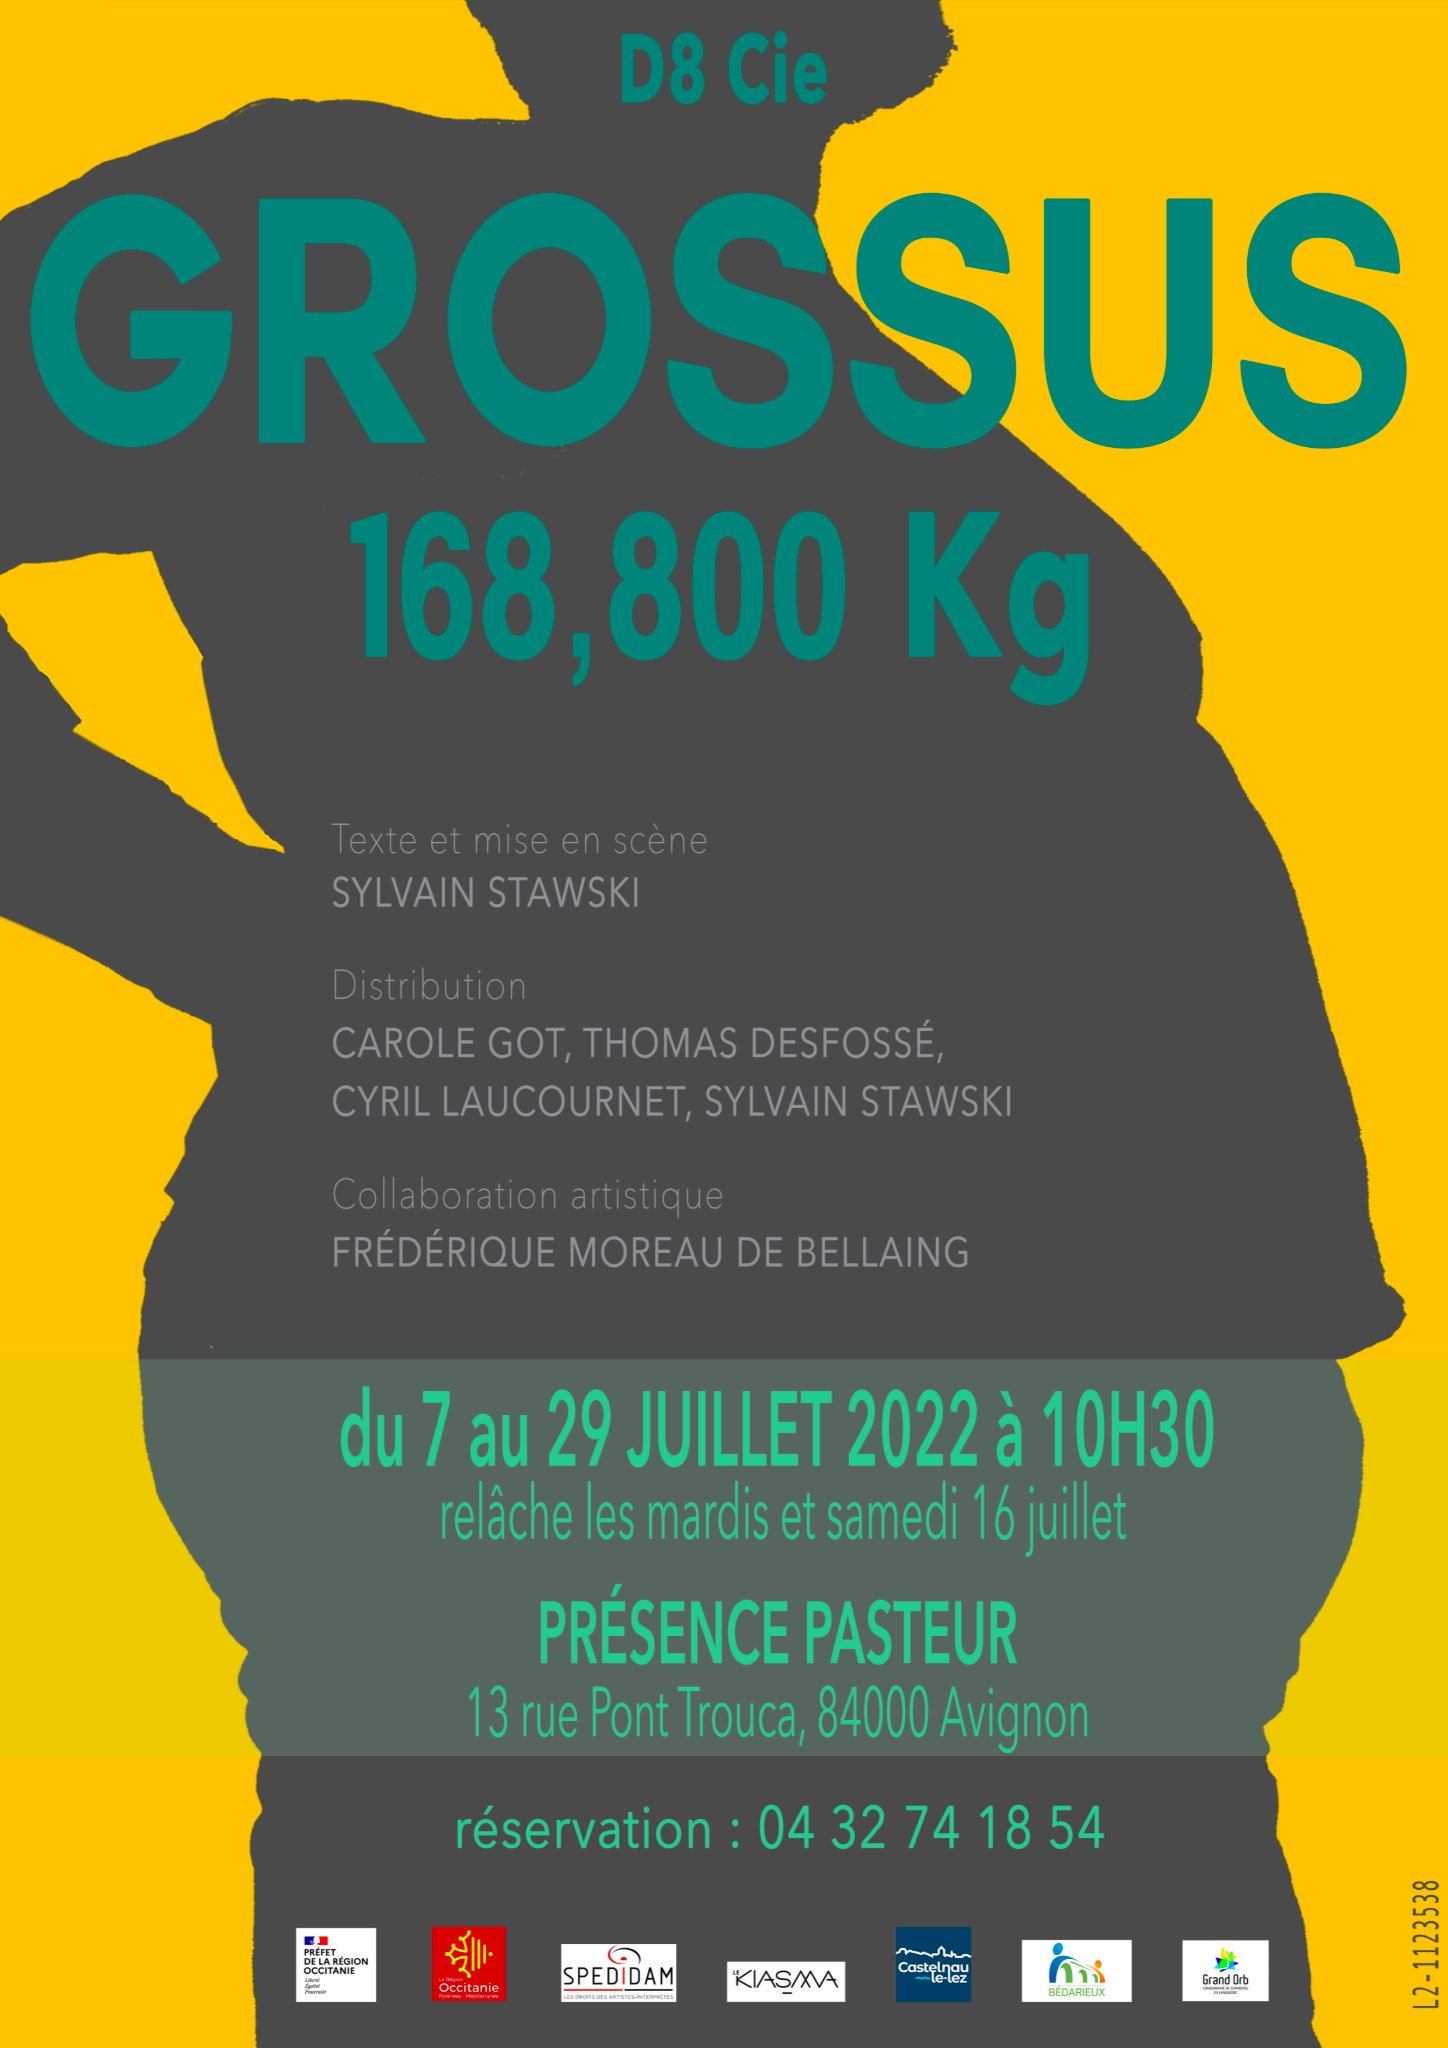 Grossus 168.800kg affiche